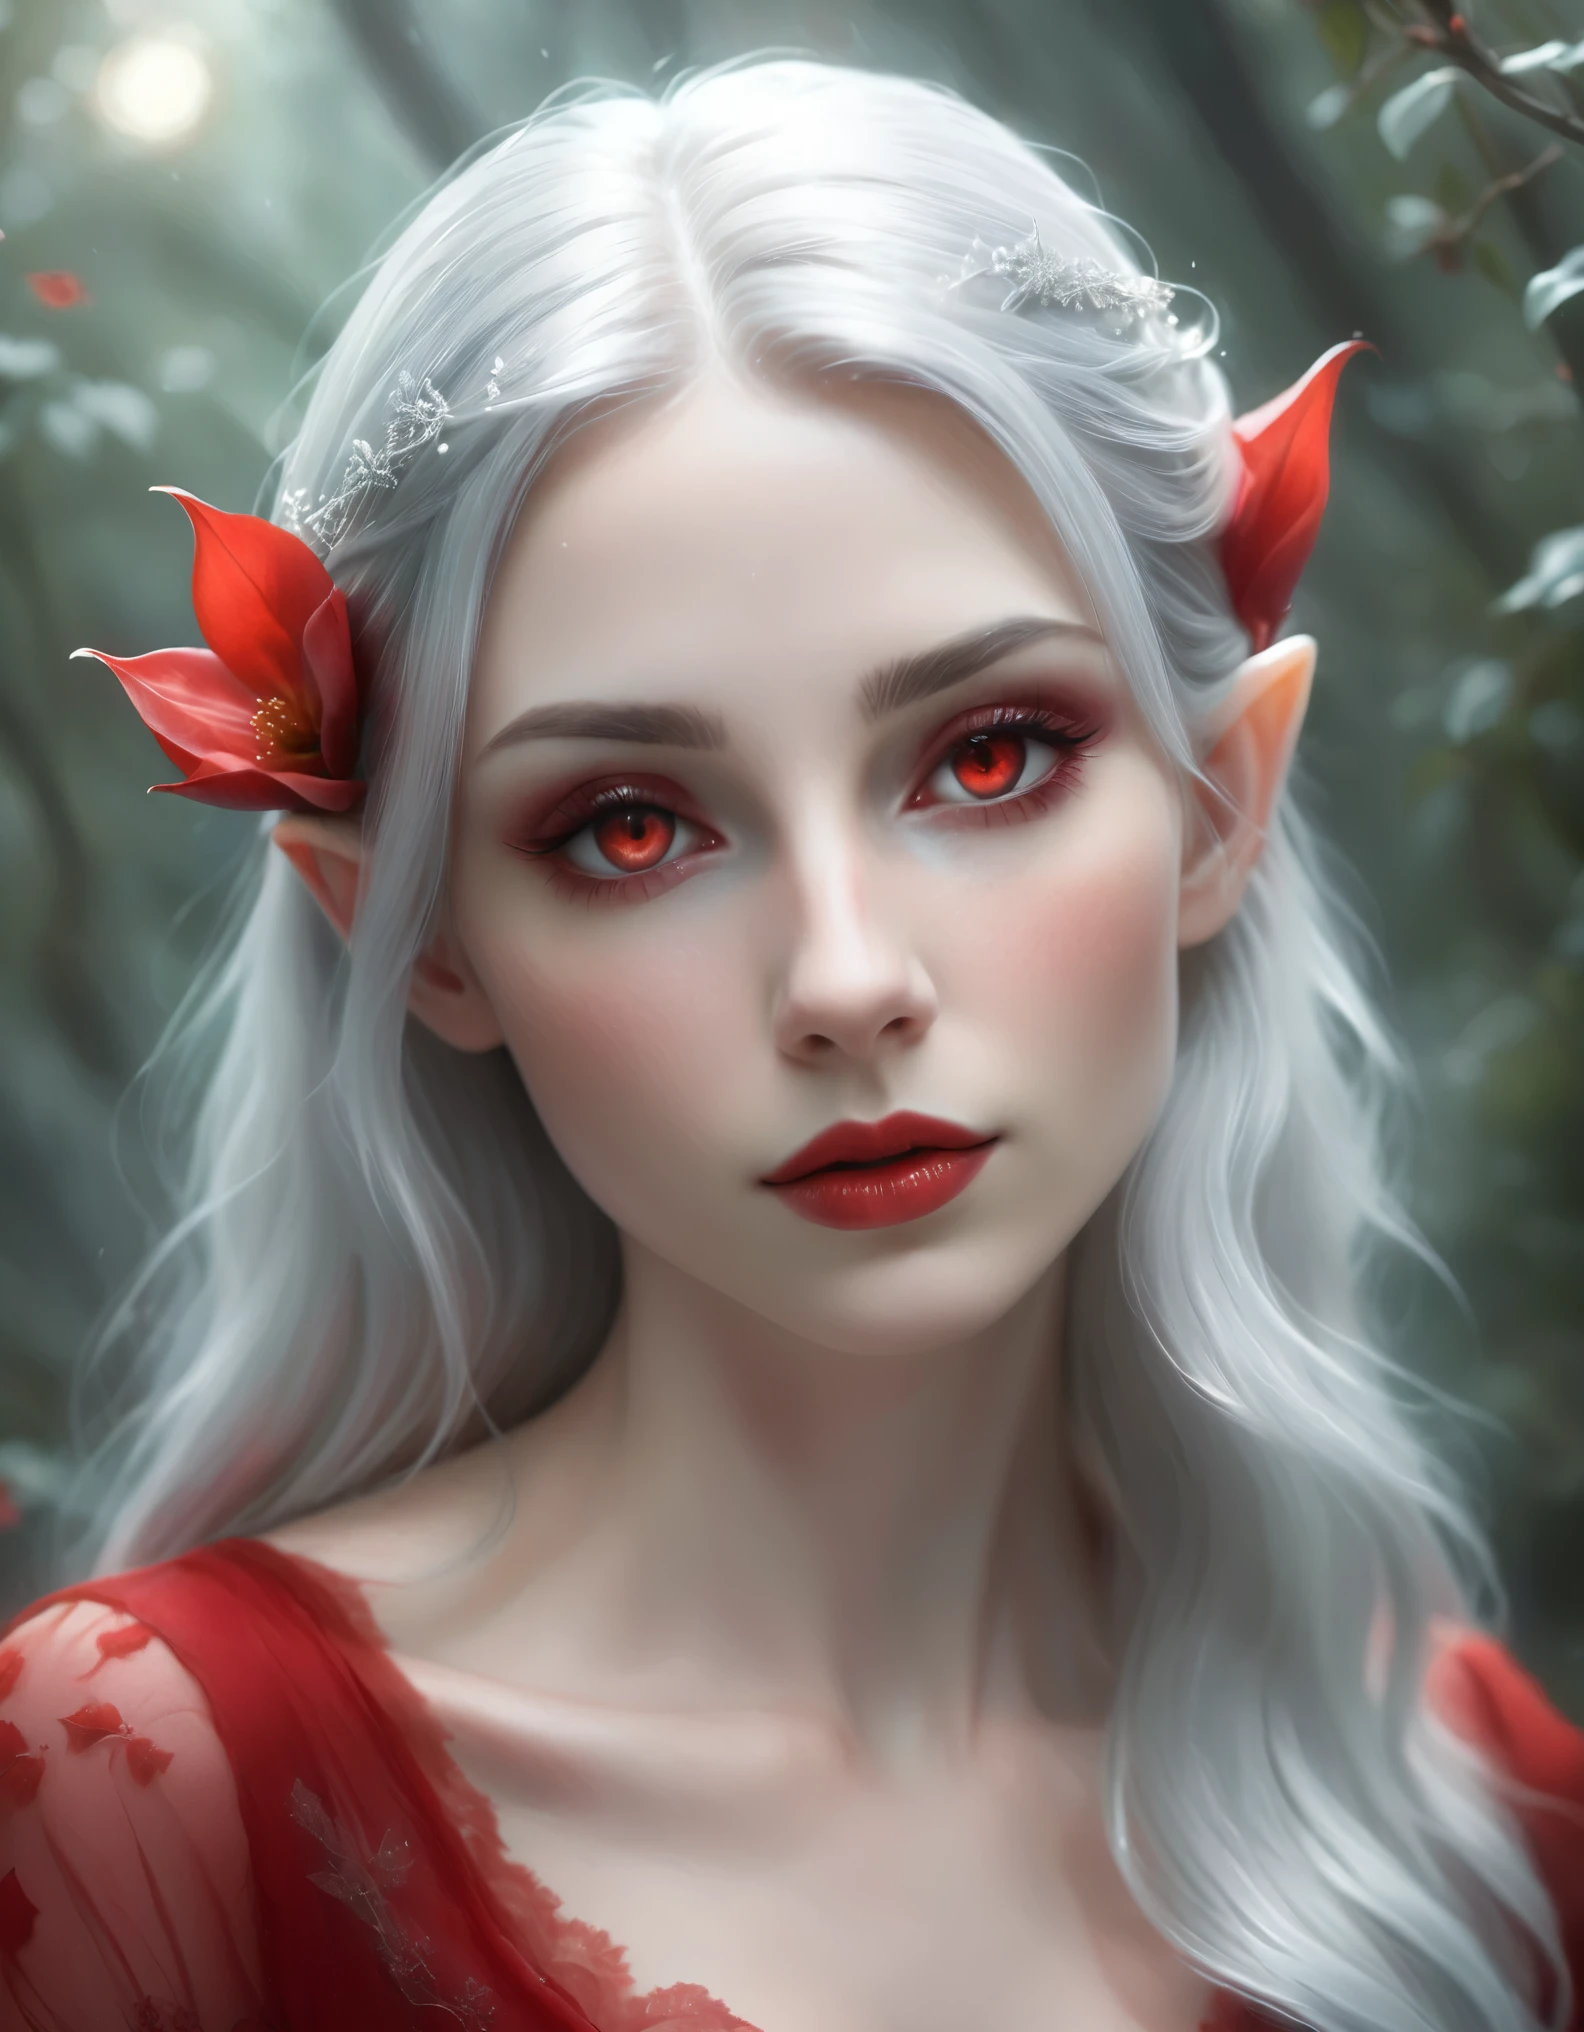 에테르 생성, 초현실적인 사진 style female elf with long, 붉은 꽃으로 장식된 흐르는 은빛 머리카락. 캐릭터는 창백해야합니다, 팔과 가슴에 복잡한 문신이 있는 매끄러운 피부. 그녀는 노출이 있는 옷을 입어야 해요, 섬세한 스트랩과 블랙 레이스 밑단이 있는 우아한 레드 의상. 그녀의 눈은 감겨있다, 볼드한 레드 아이섀도우와 다크 섀도우를 선보이며, 드라마틱한 속눈썹, 그리고 입술도 그에 어울리는 레드 컬러로 칠해져 있어요. 그녀의 표정은 고요하고 초자연적이다. 배경이 흐릿해야 합니다., 위에서 그녀를 비추는 부드러운 빛으로 어두운 환경, 신비롭고 신비로운 분위기를 연출. 그녀의 머리카락과 드레스에 미묘한 하이라이트를 추가하여 천상의 느낌을 강화하세요.. 위에서 멀리 떨어진 전신 모습, 초현실적인 사진, 16,000, 생생한 색상